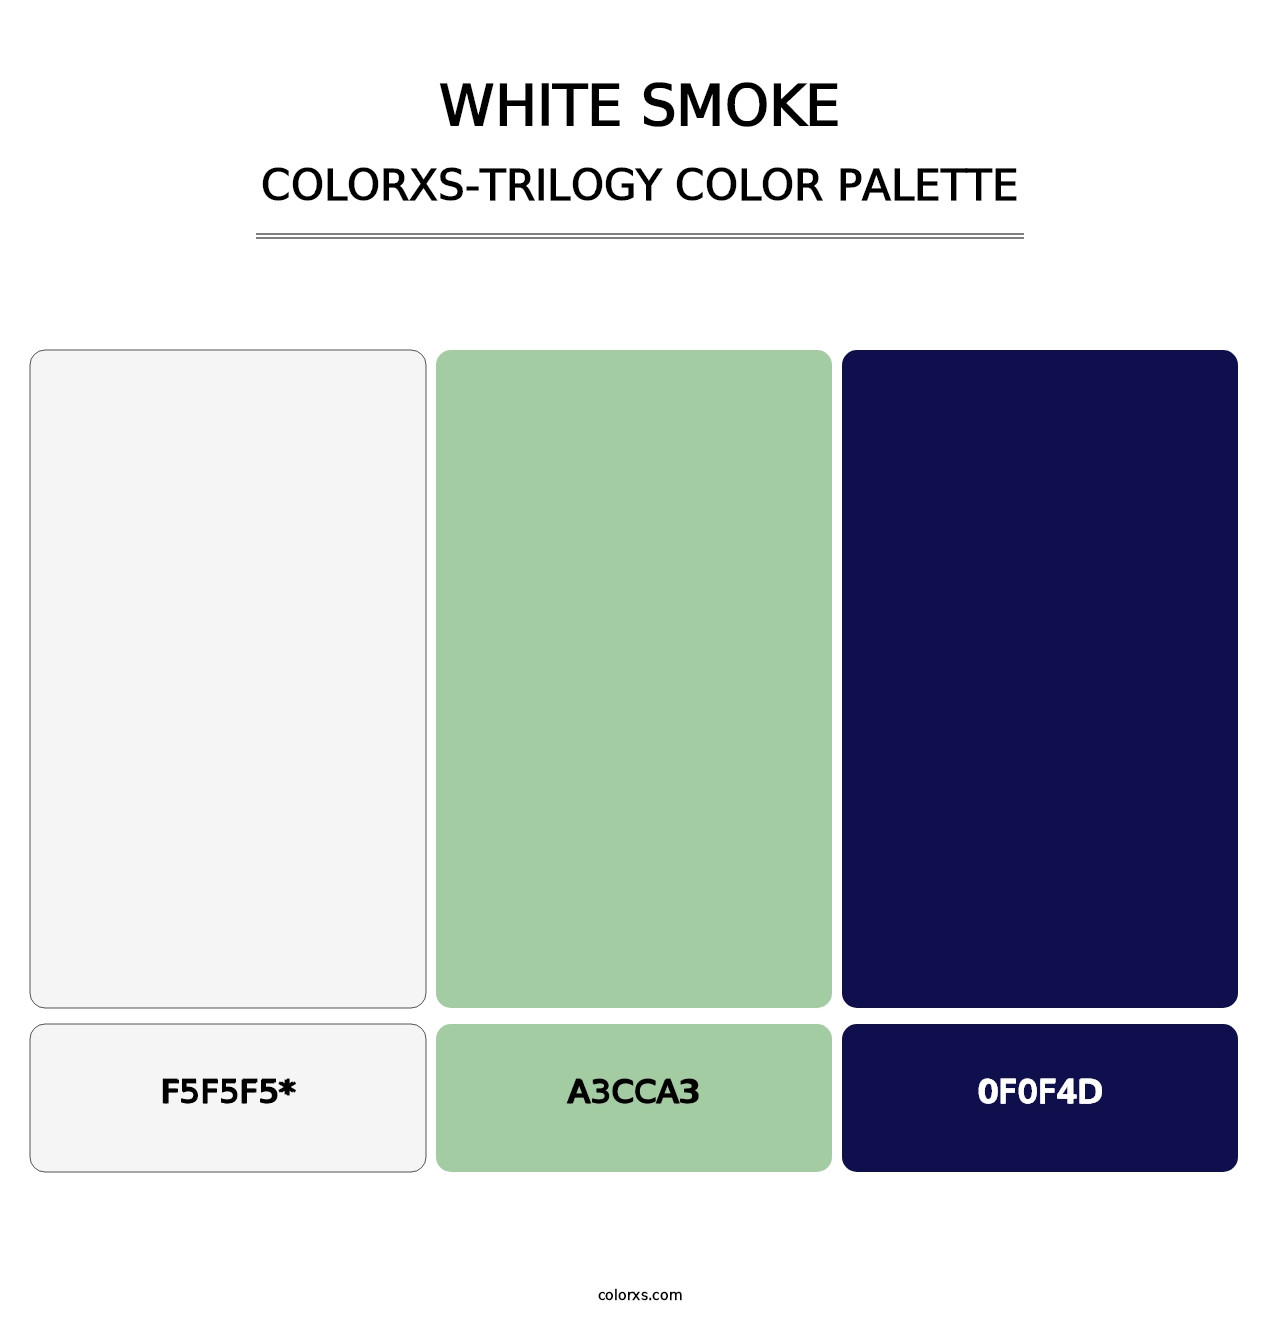 White Smoke - Colorxs Trilogy Palette